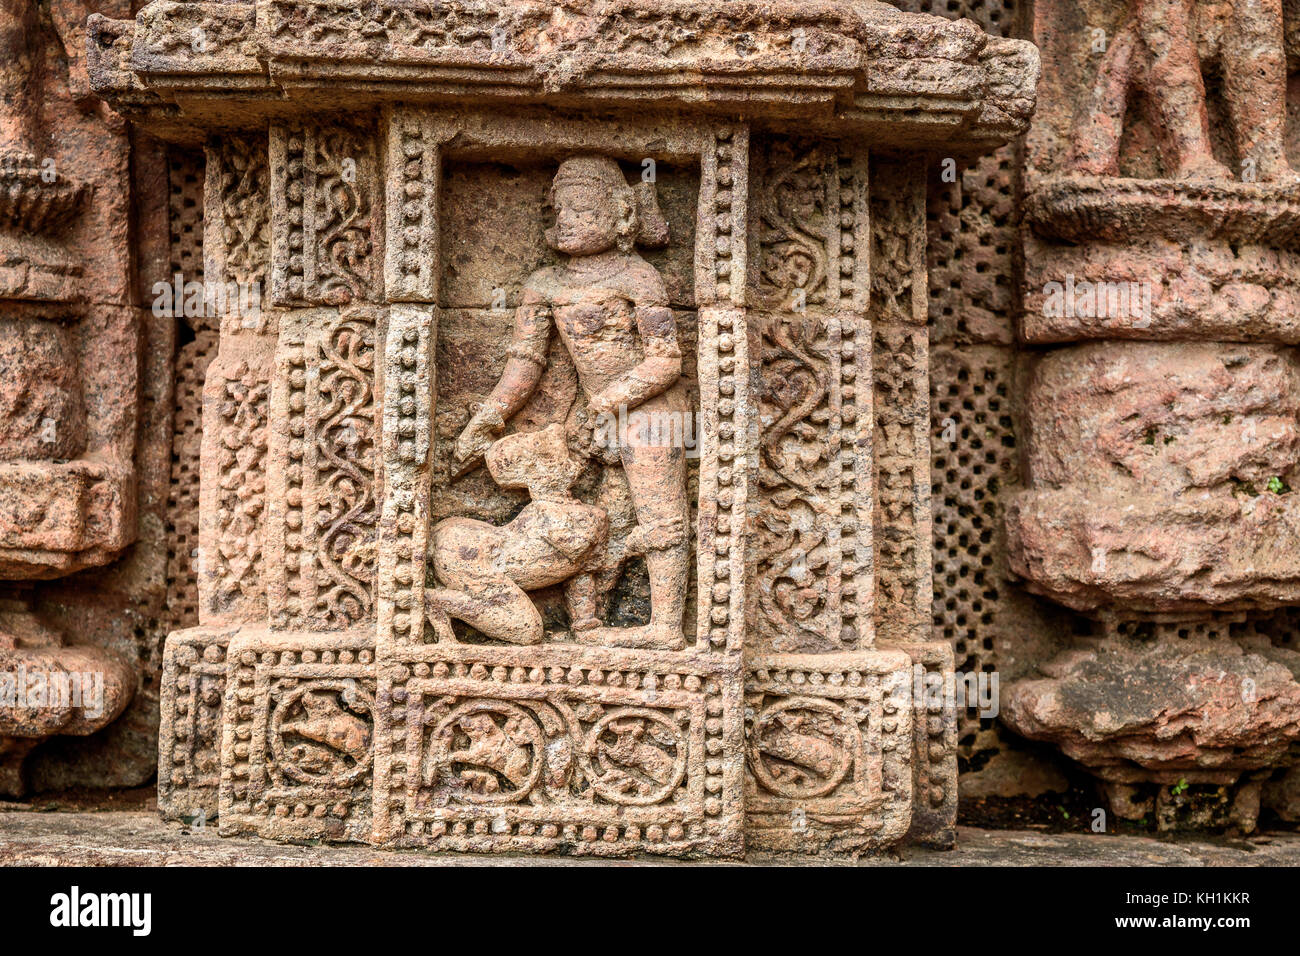 Stone carving at Konark Sun temple, Puri. Stock Photo